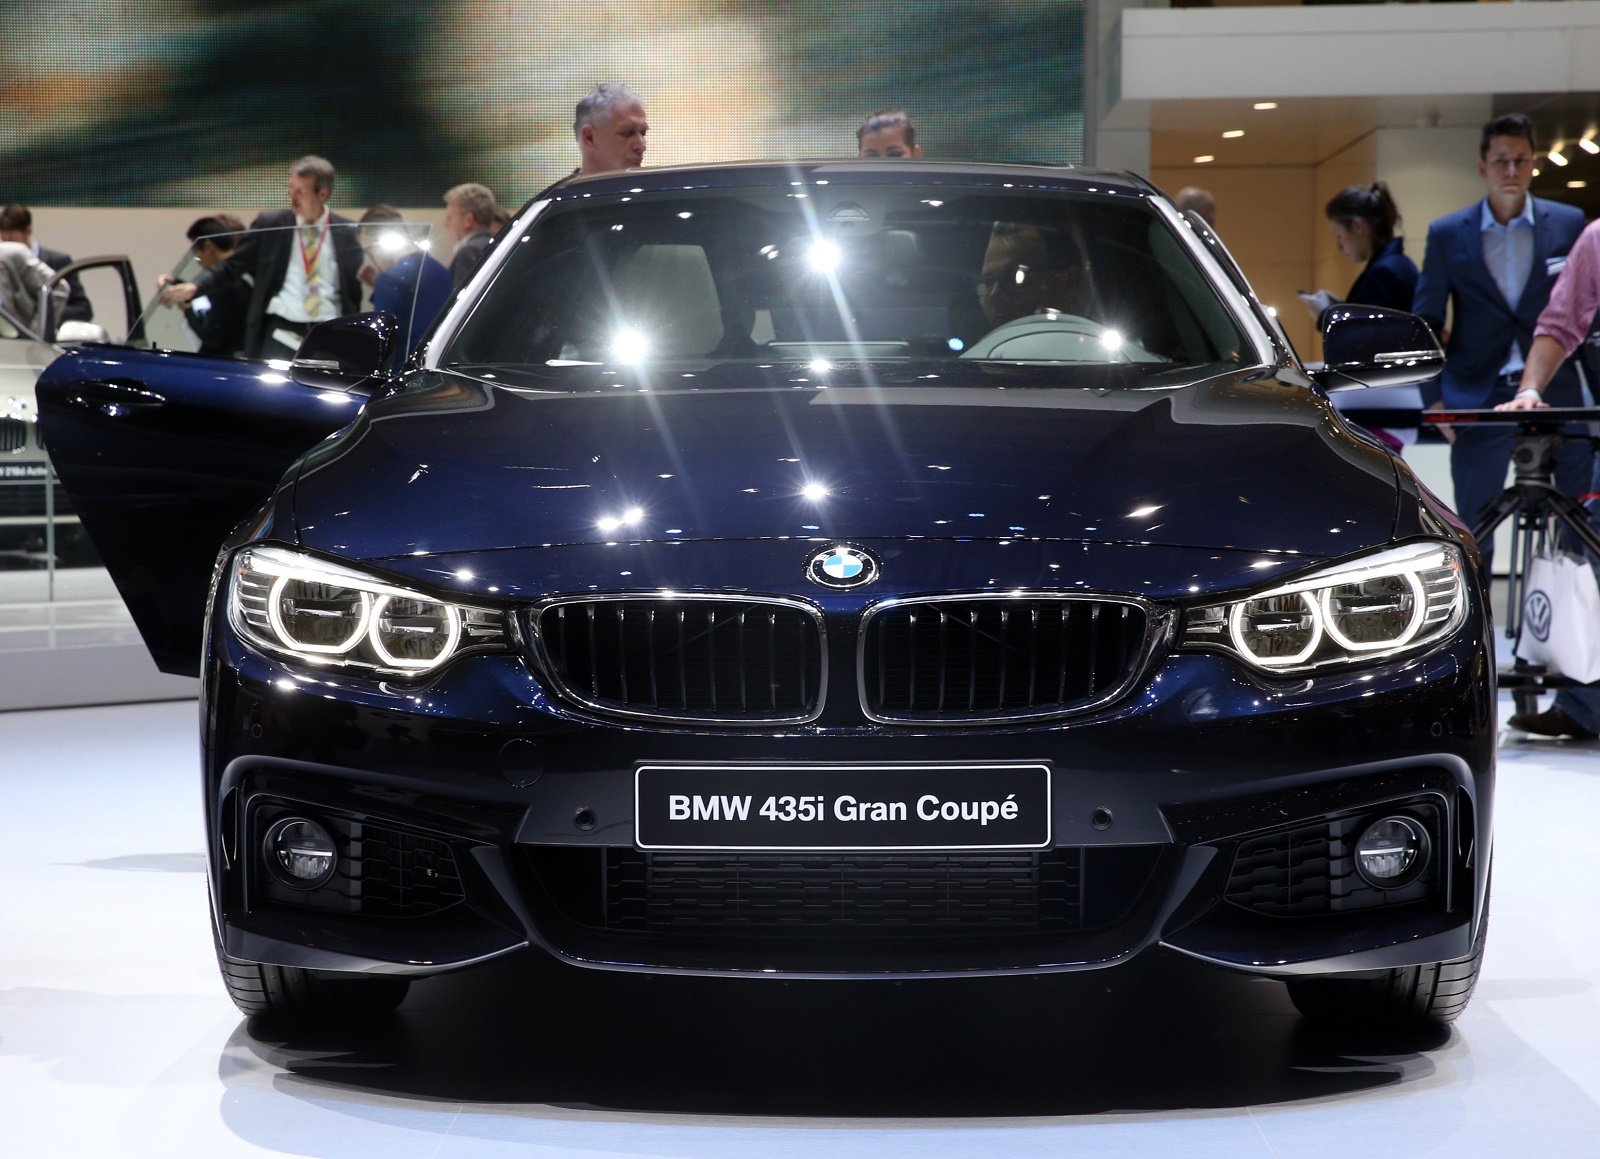 Купить bmw в германии. Марки машин немецких BMW. BMW популярные. БМВ известных брендов. Германский автомобиль БМВ.